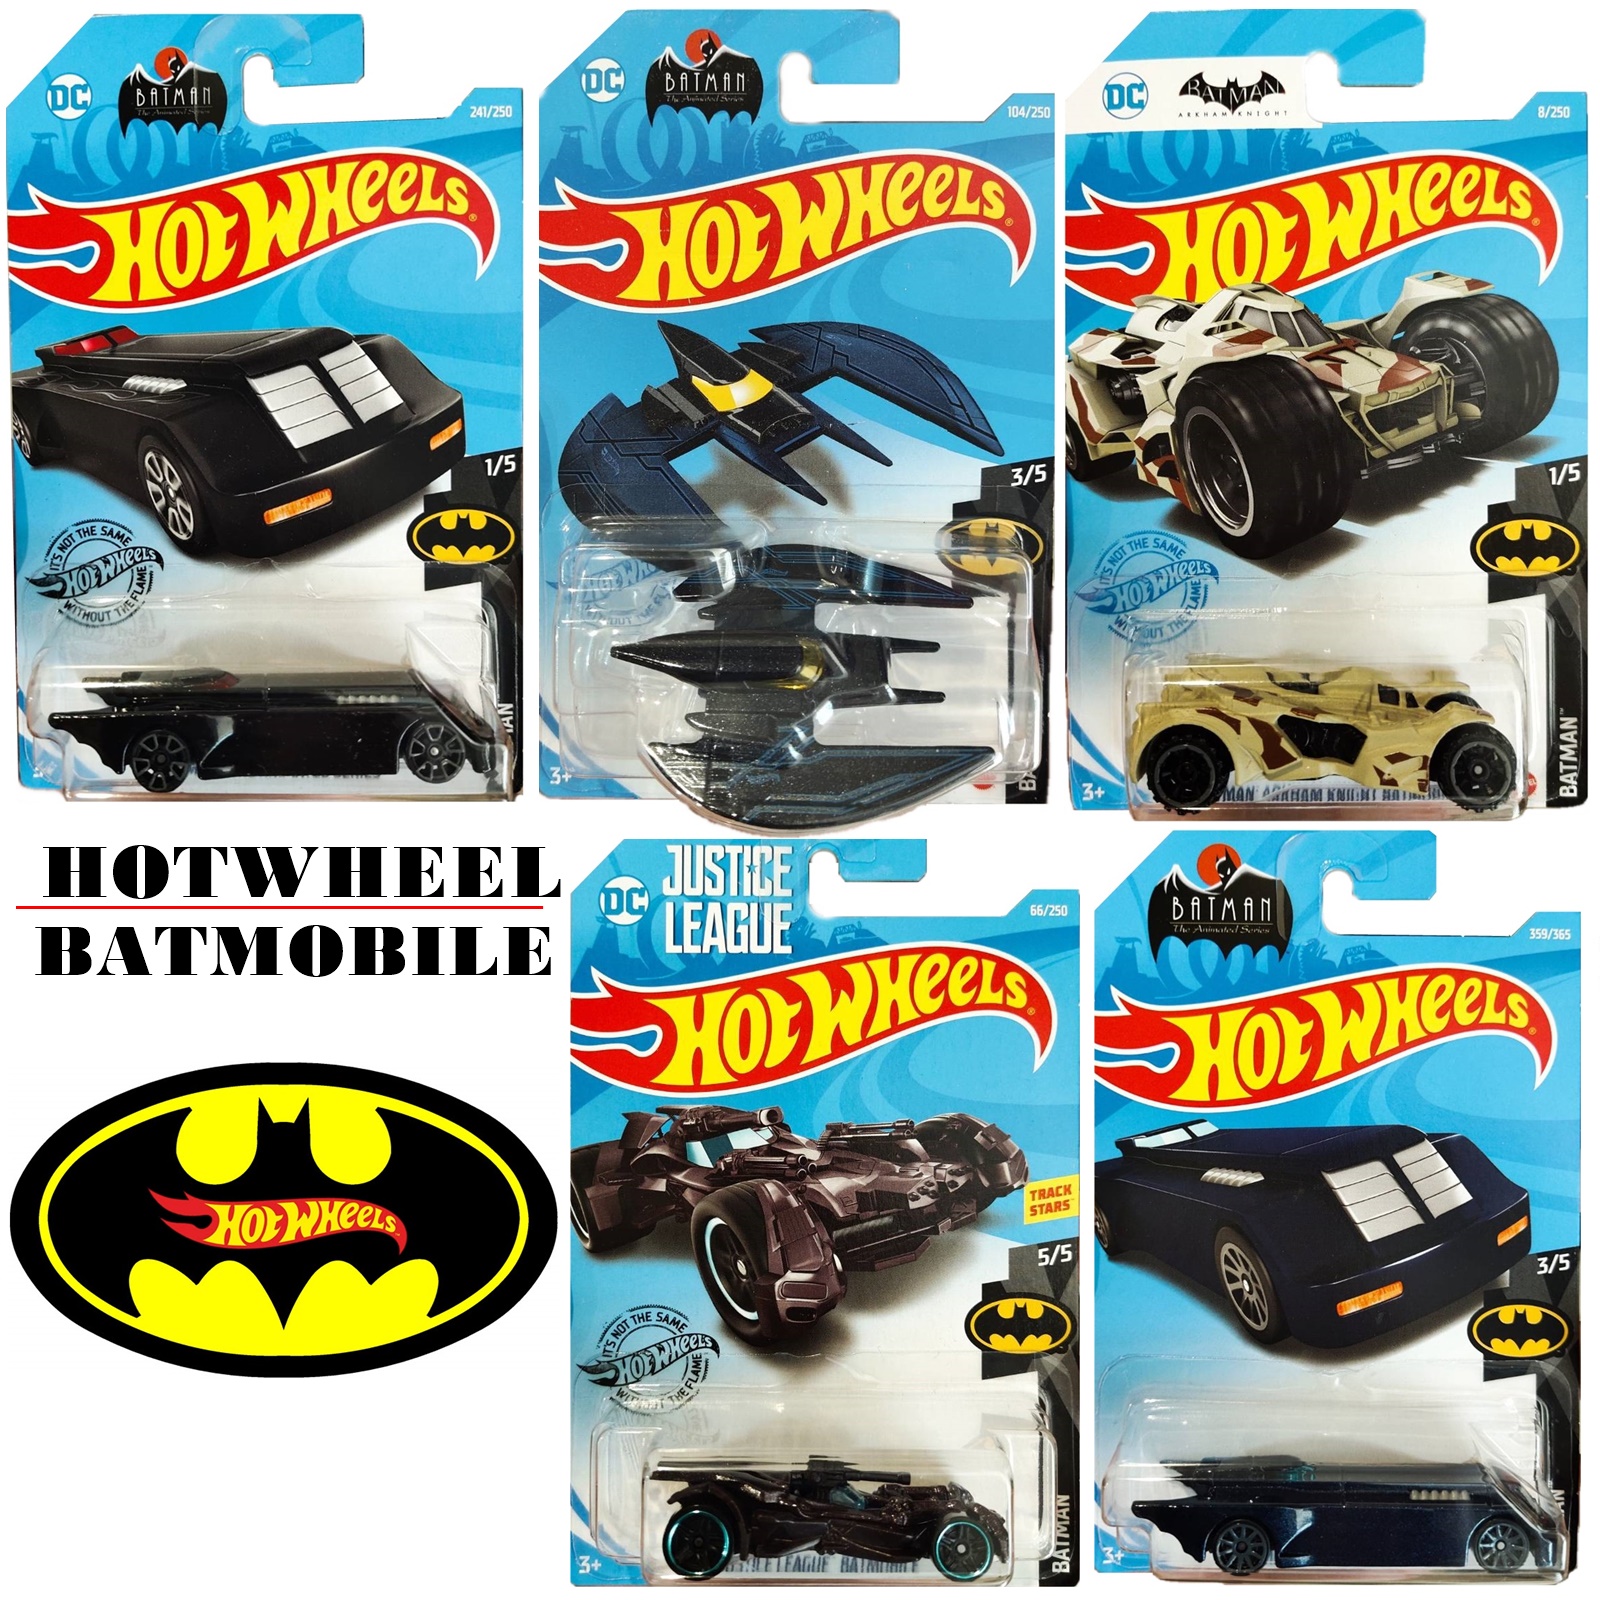 Hotwheels Batmobile หลากหลายแบบ ลิขสิทธิ์แท้